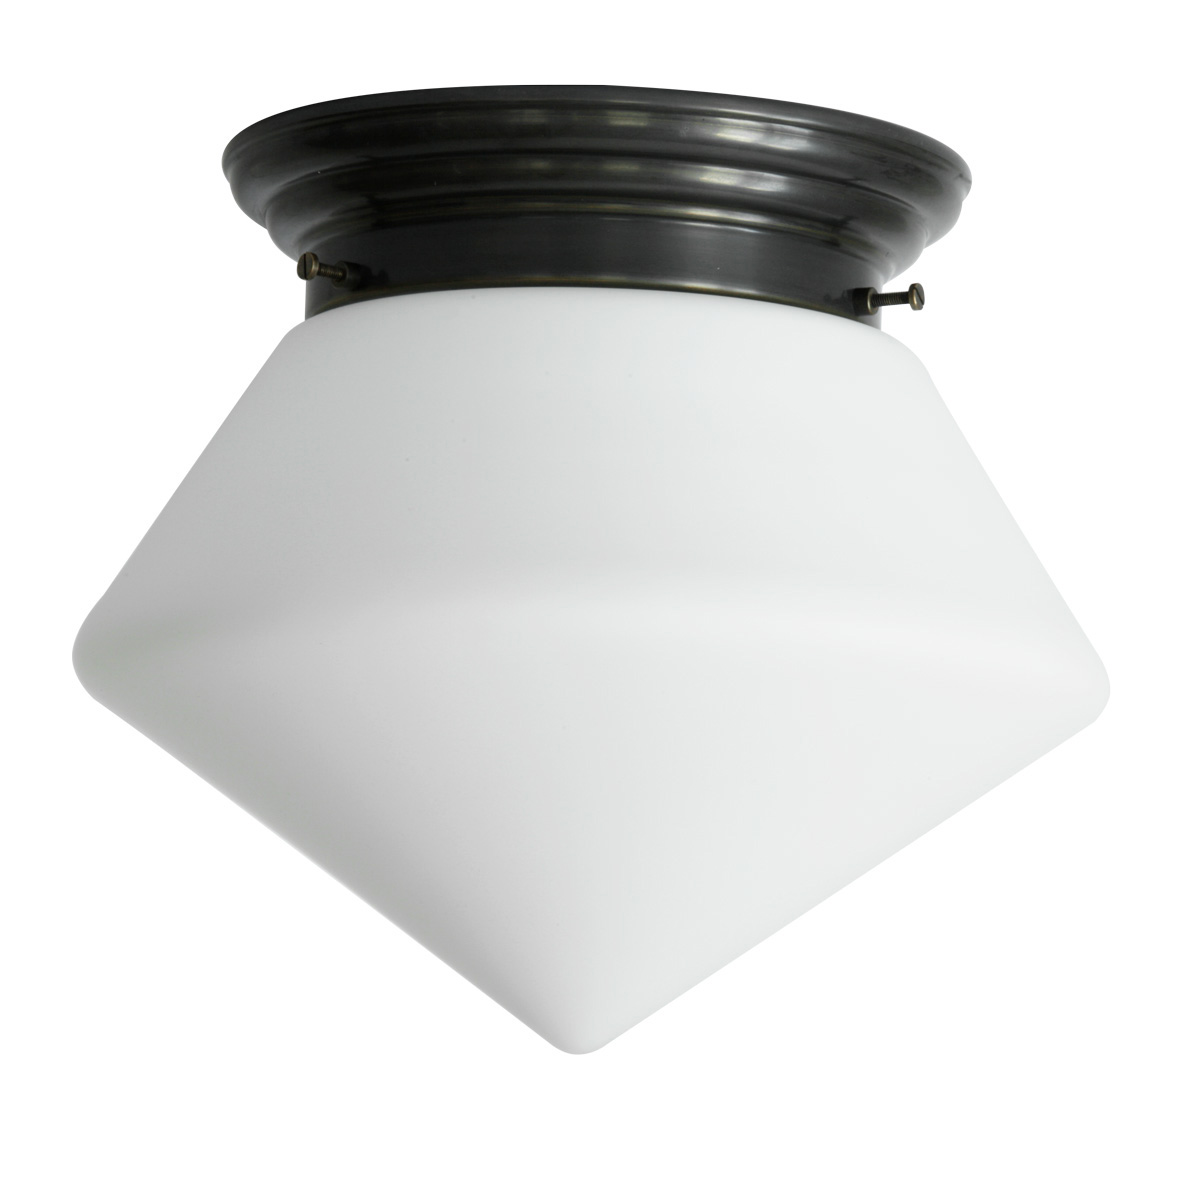 Messing-Deckenlampe mit spitzem matten Opalglas Ø 30/36 cm: Abgebildet mit dunkelbraun handpatiniertem (brüniertem) Deckenteil, kleines Modell